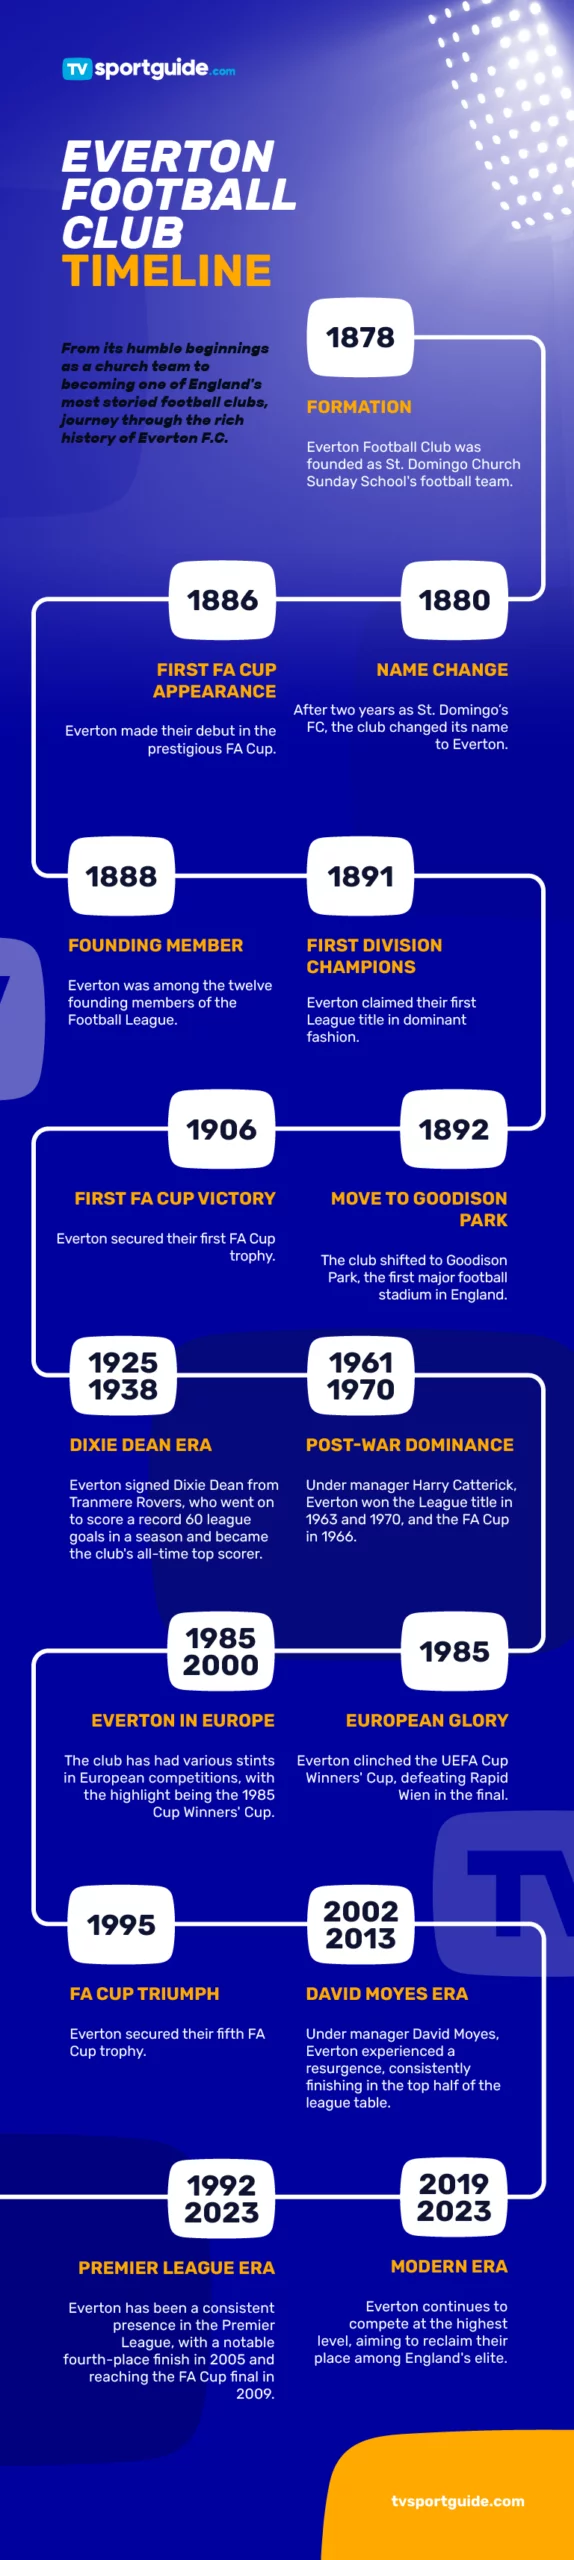 Everton football club timeline